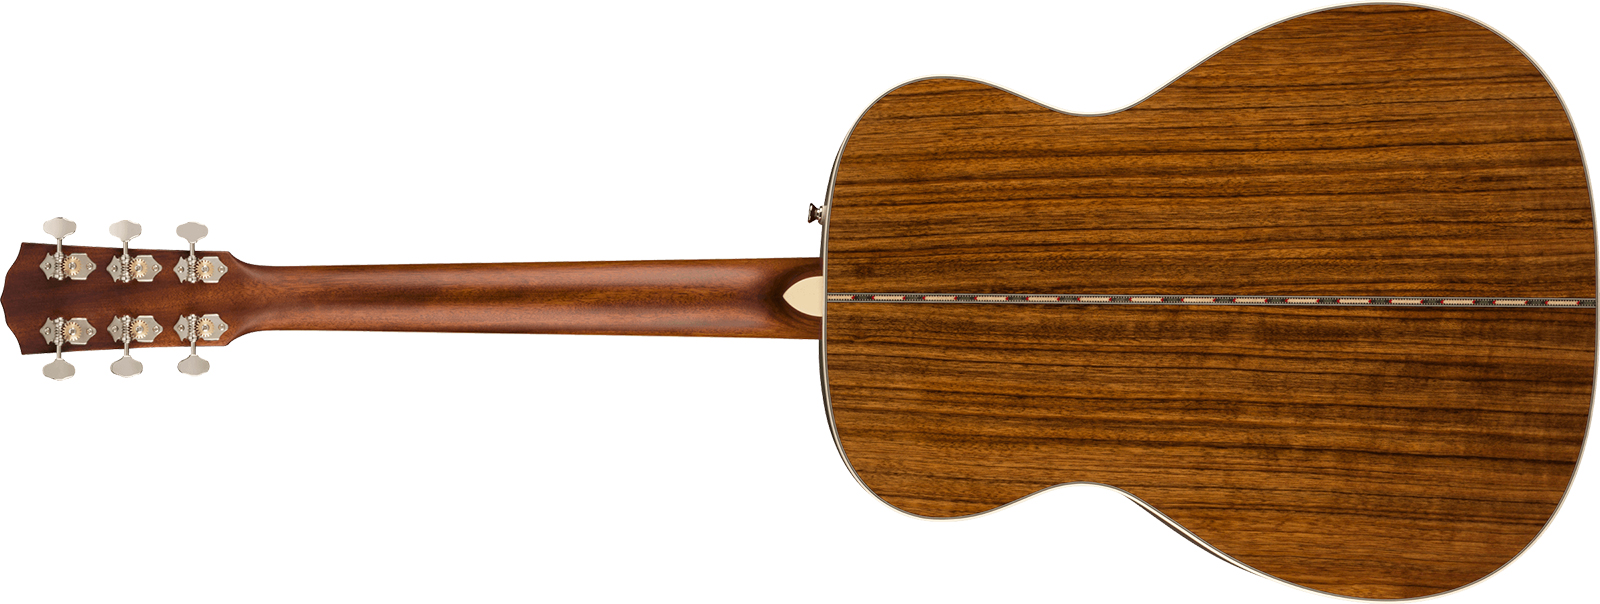 Fender Po-220e Paramount Fsr Ltd Orchestra Model Om Epicea Ovangkol Ova - Aged Natural - Guitare Electro Acoustique - Variation 1